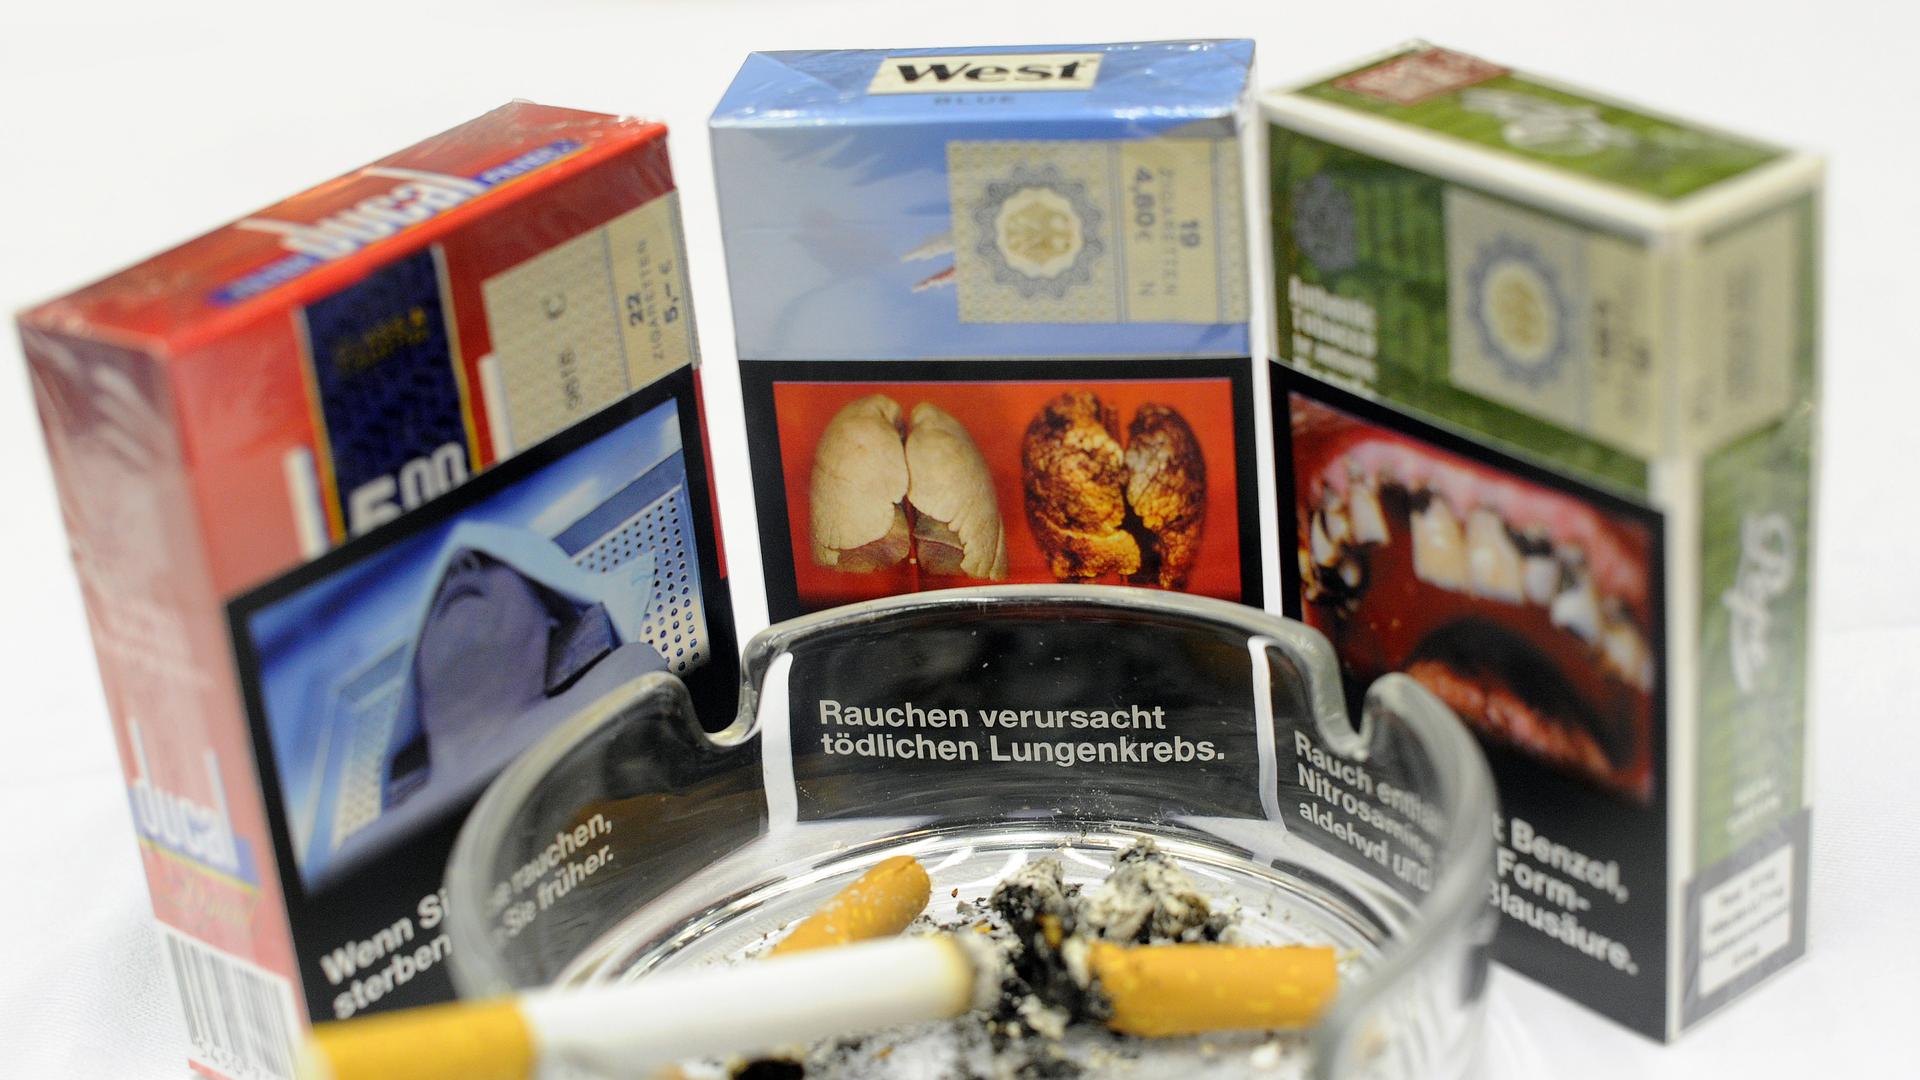 Zigarettenschachteln mit einem möglichen einheitlichem Aussehen und Aufdrücken von Folgeschäden des Zigarettenkonsums stehen am Freitag (14.09.2012) auf der Eröffnungs-Pressekonferenz zur Tabak-Fachmesse inter-tabac in den Westfalenhallen in Dortmund hint